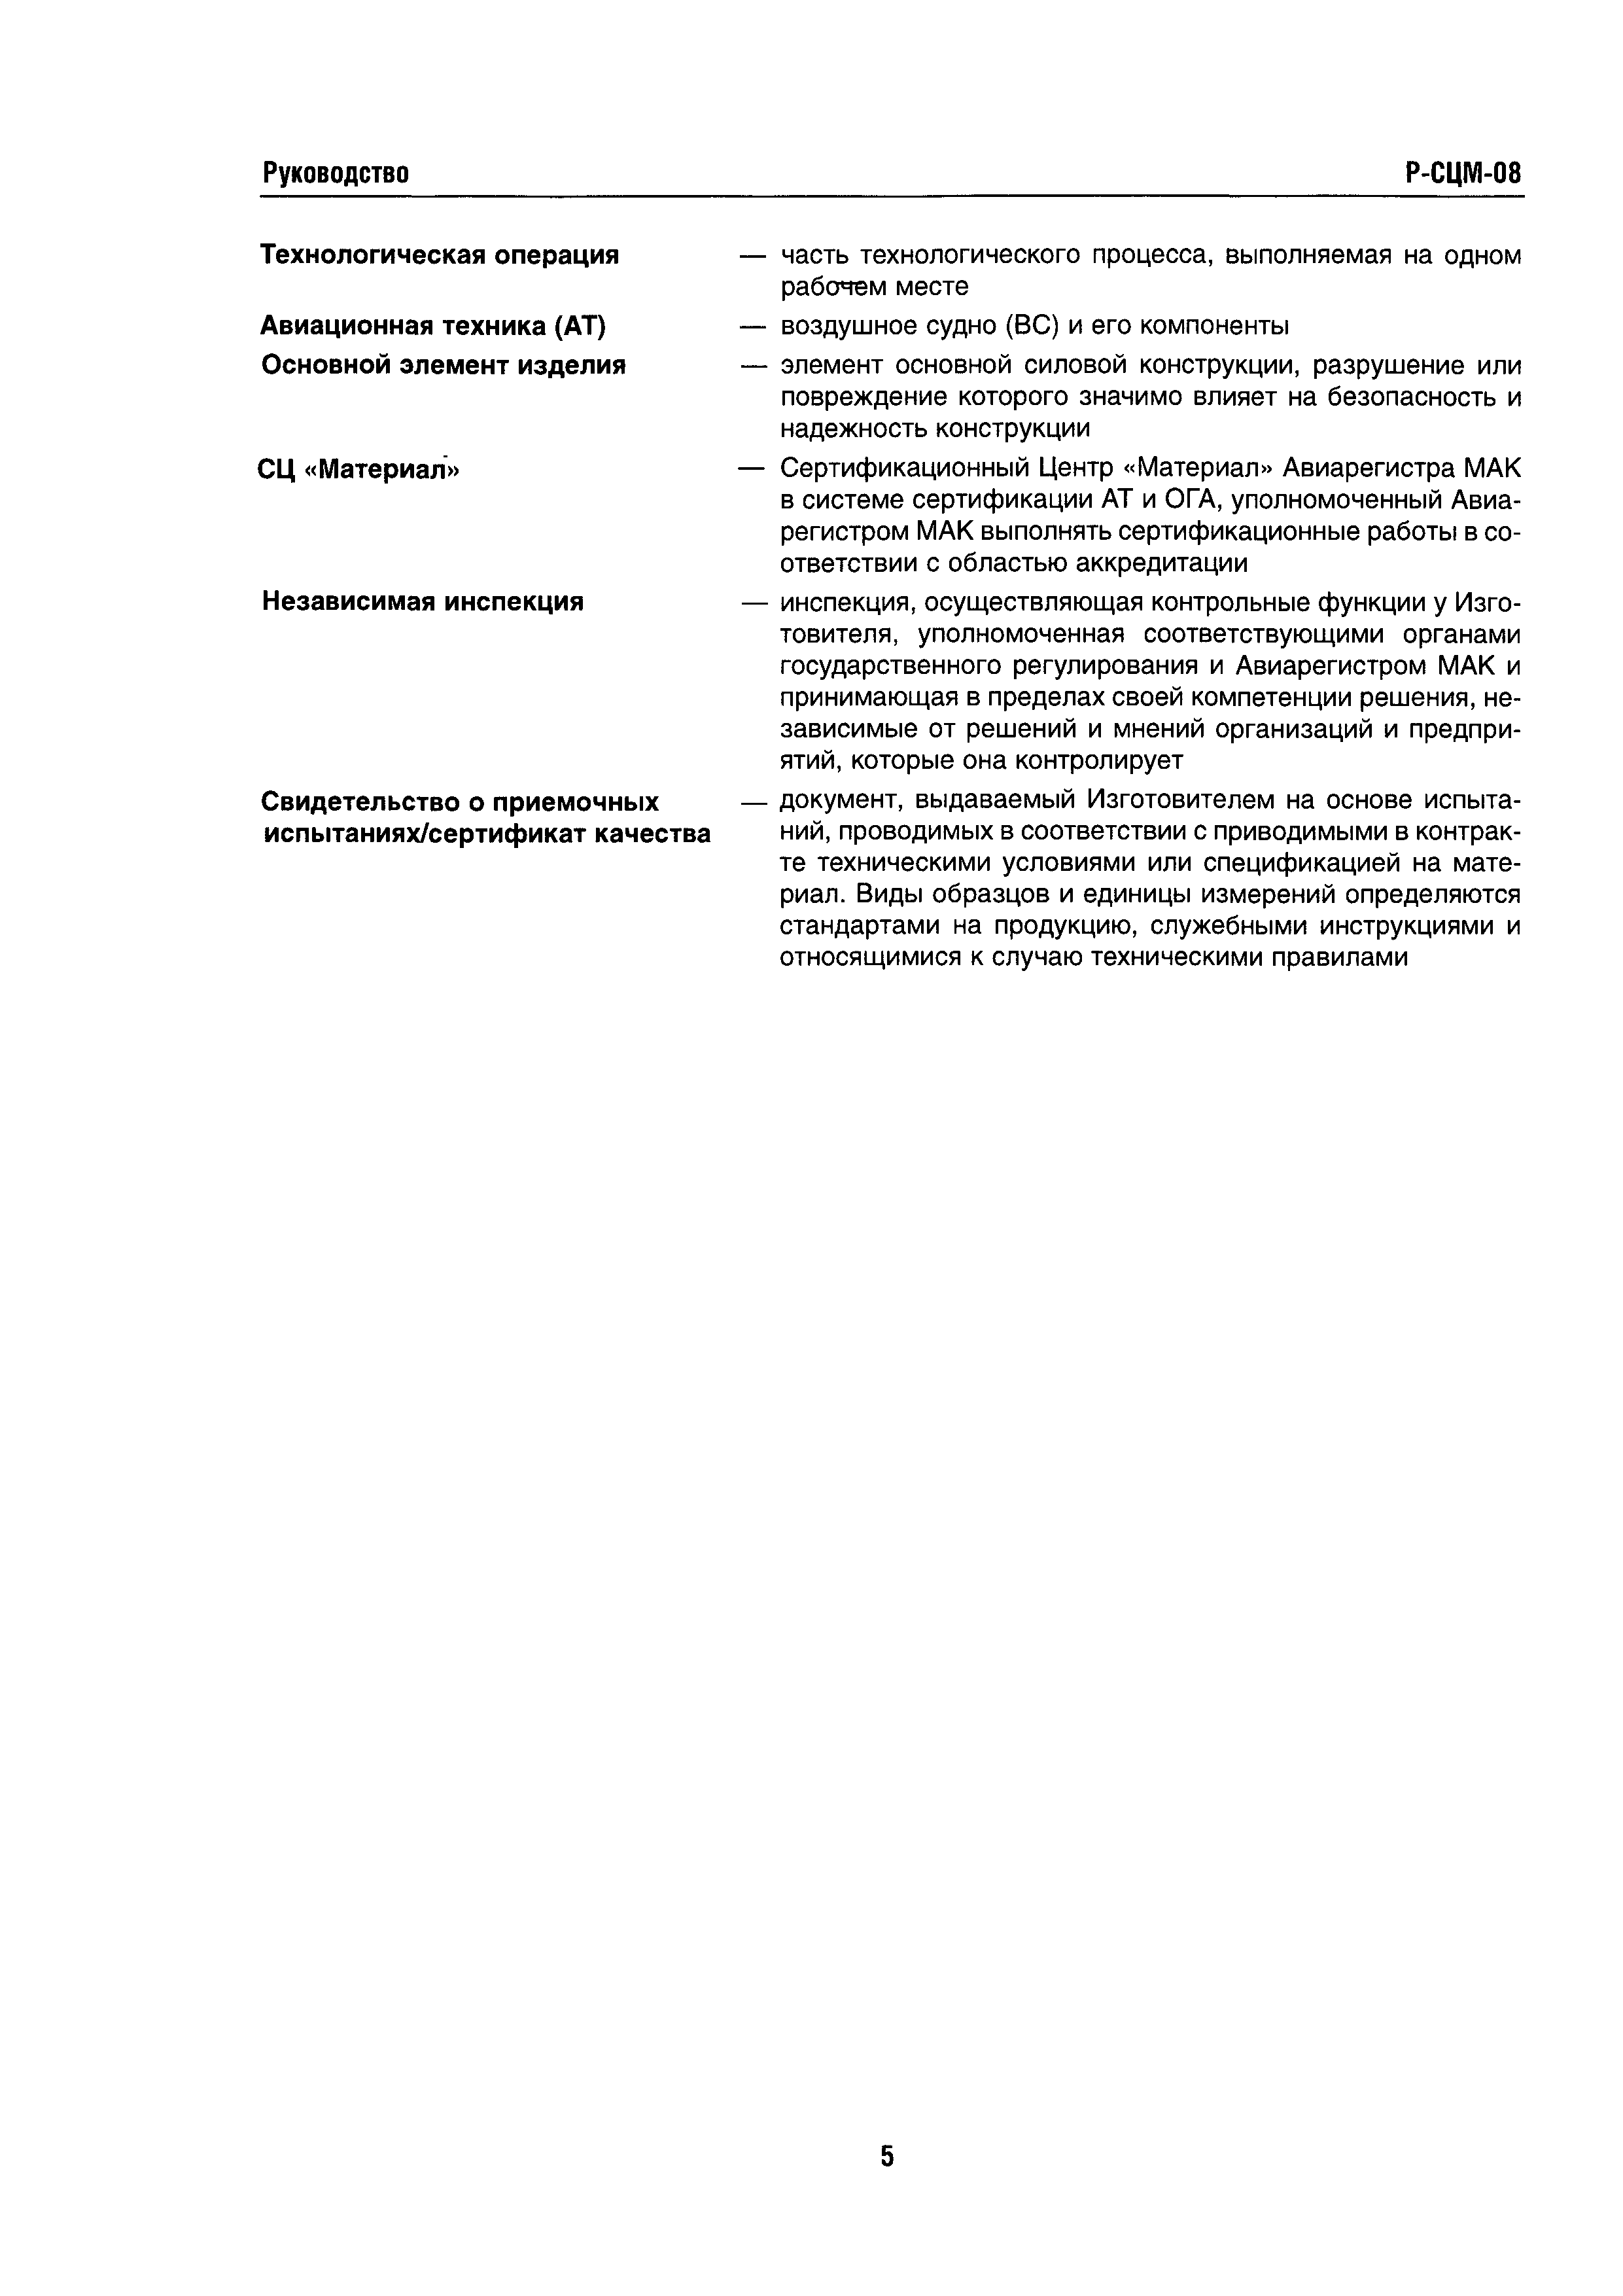 Директивное письмо 04-2003